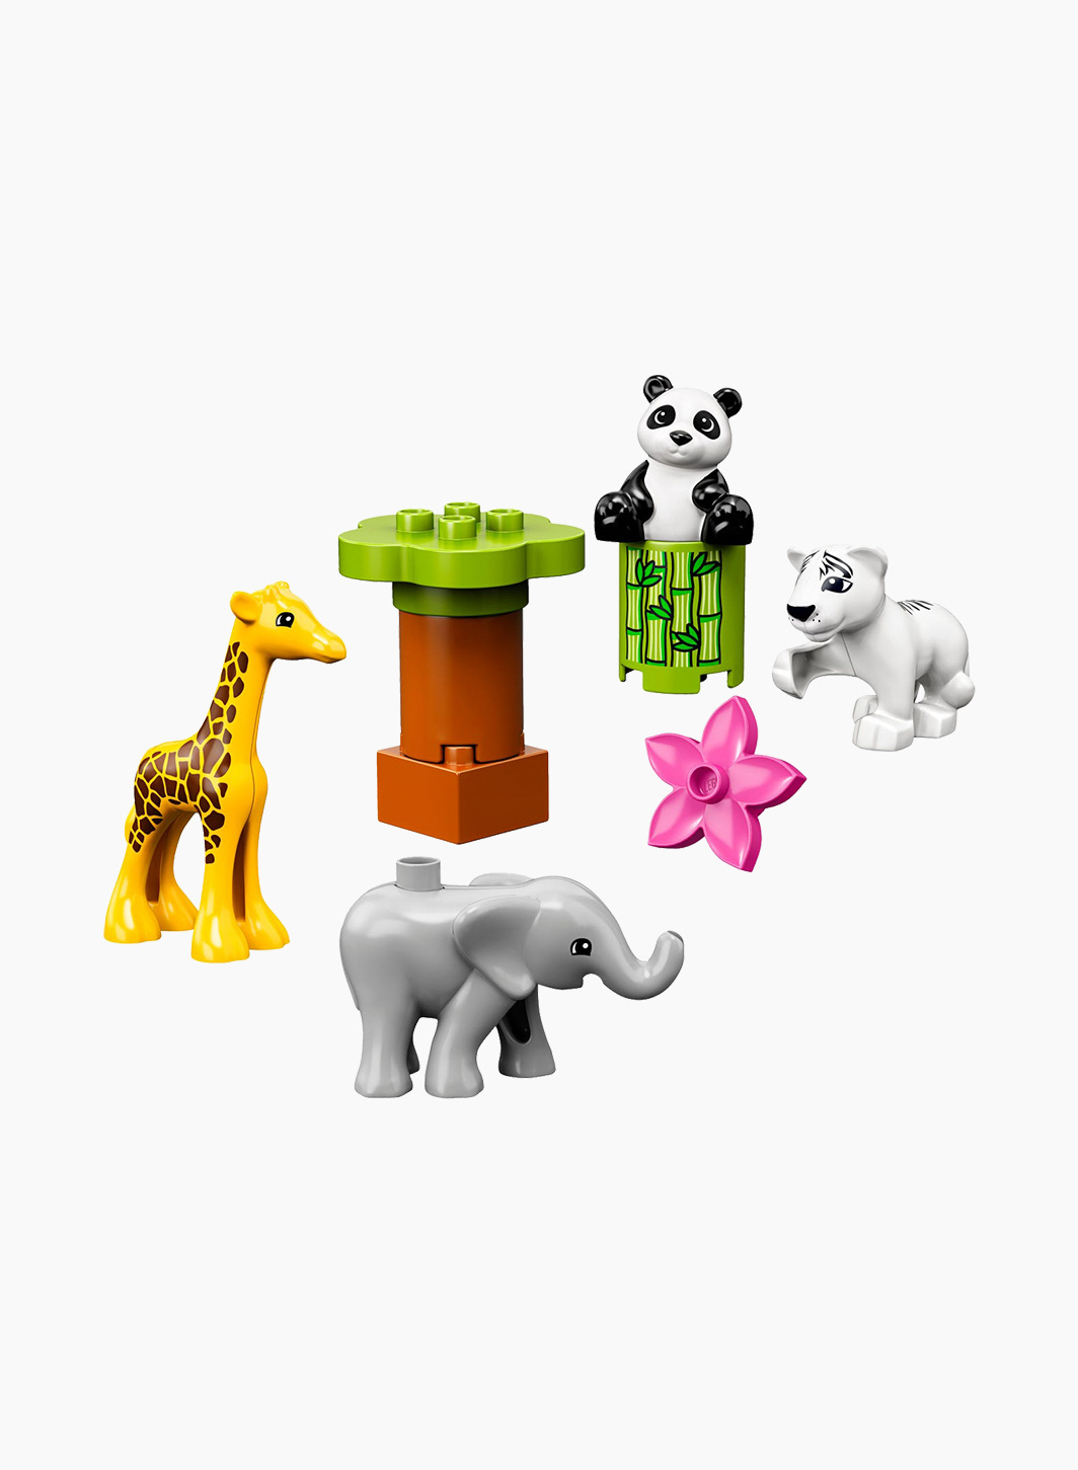 Lego Duplo Constructor Baby Animals